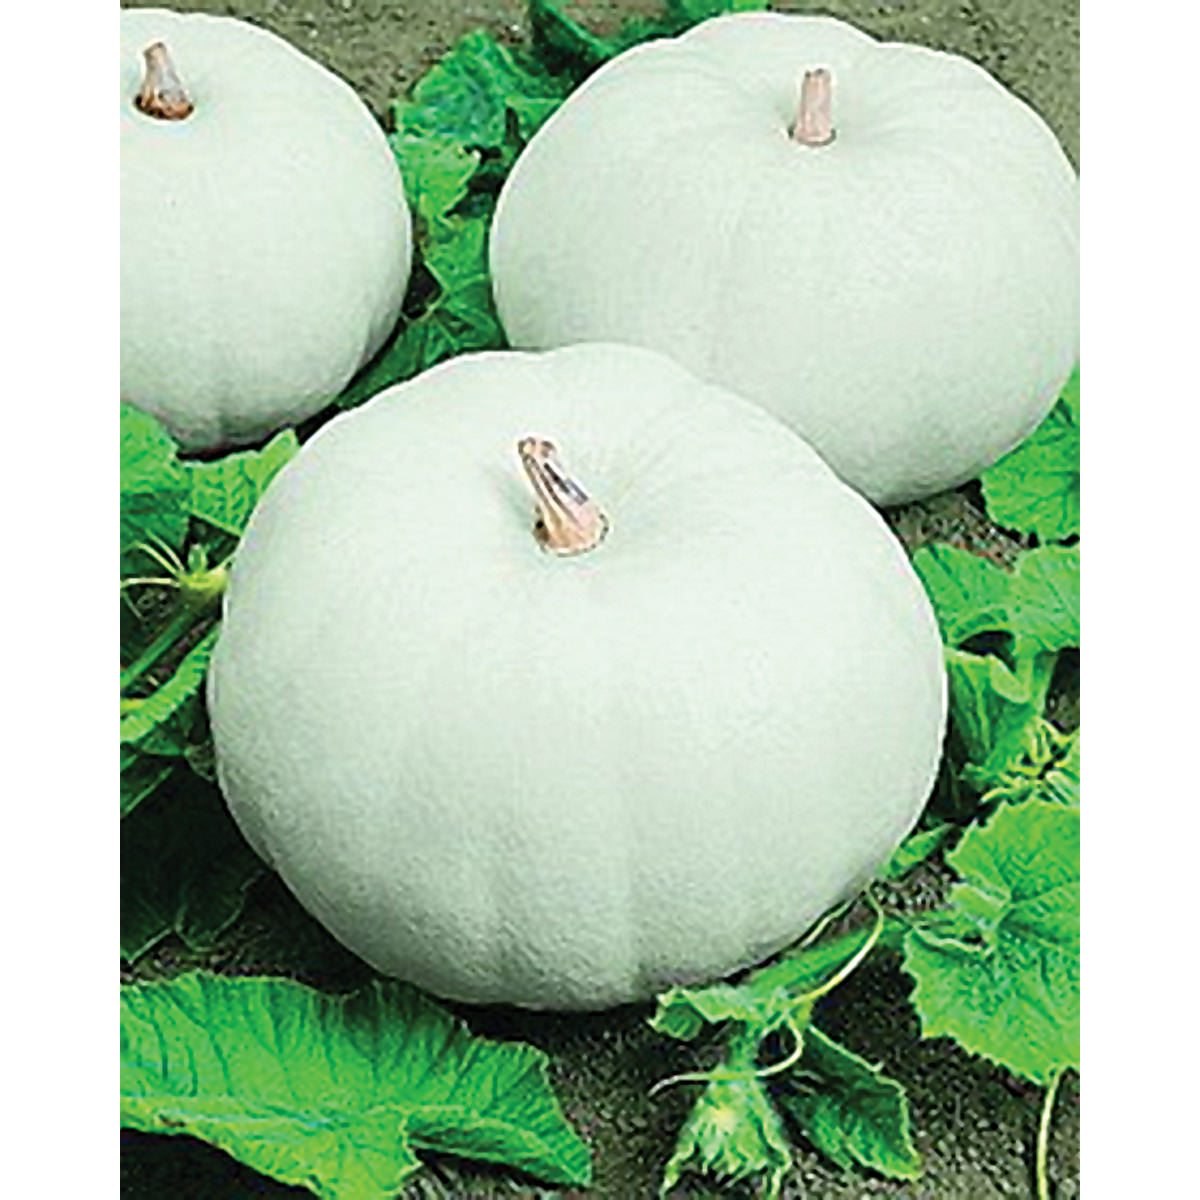 Casper Pumpkin Seeds